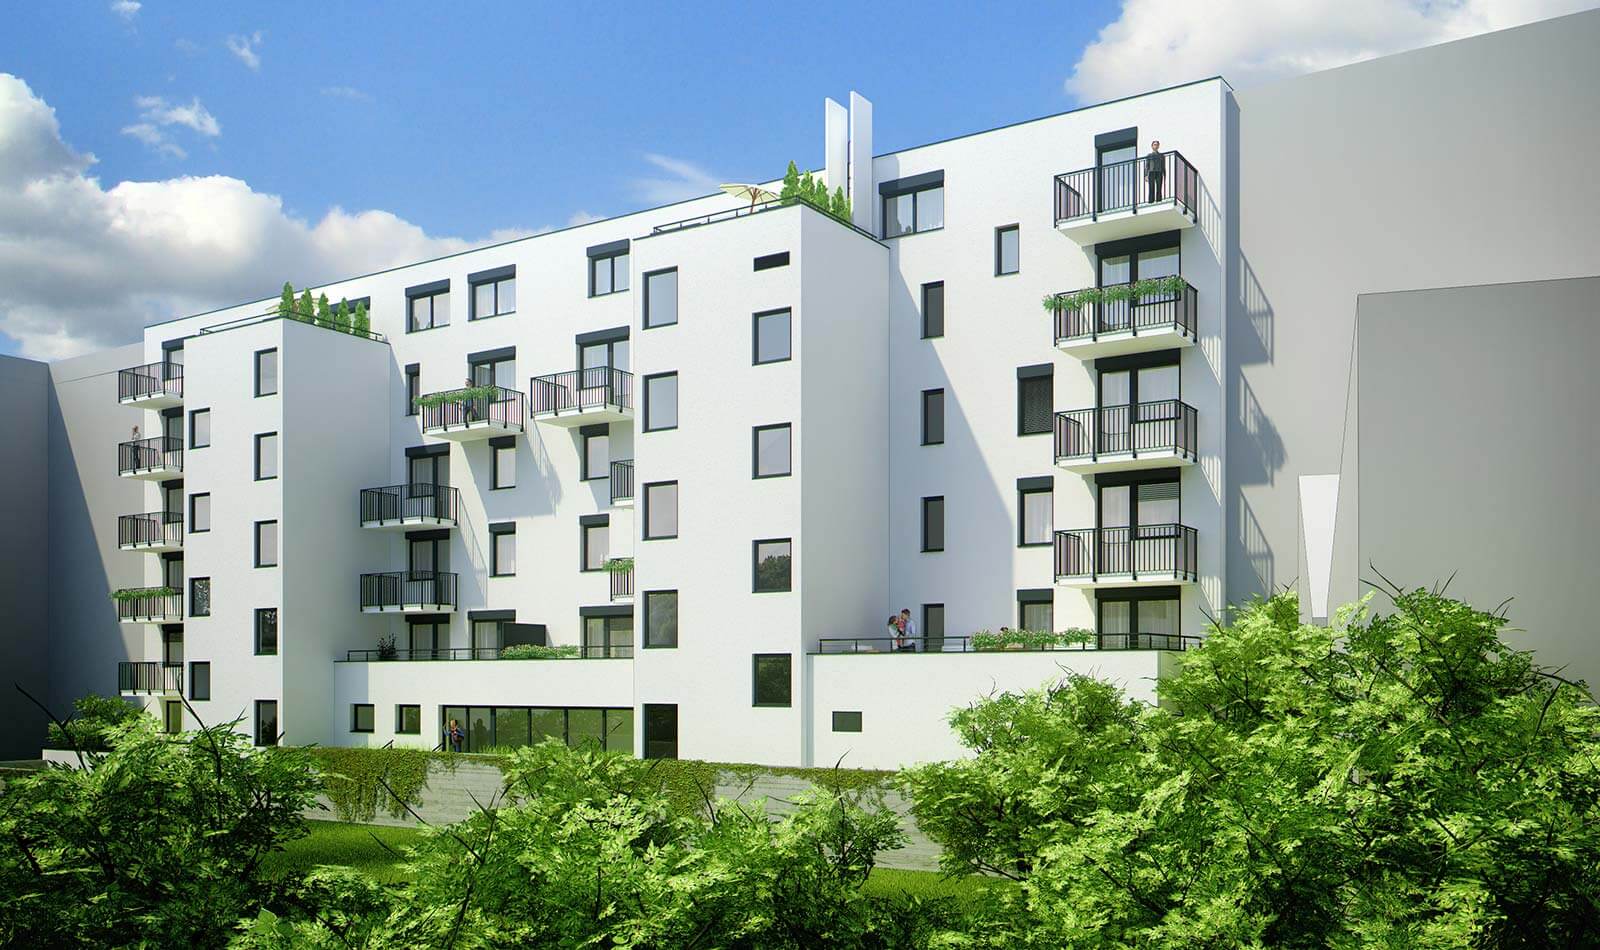 Predané: Novostavba 3 izbový byt, širšie centrum v Bratislave, Beskydská ulica, 75,54m2, balkón 4,5m2, štandard.-7